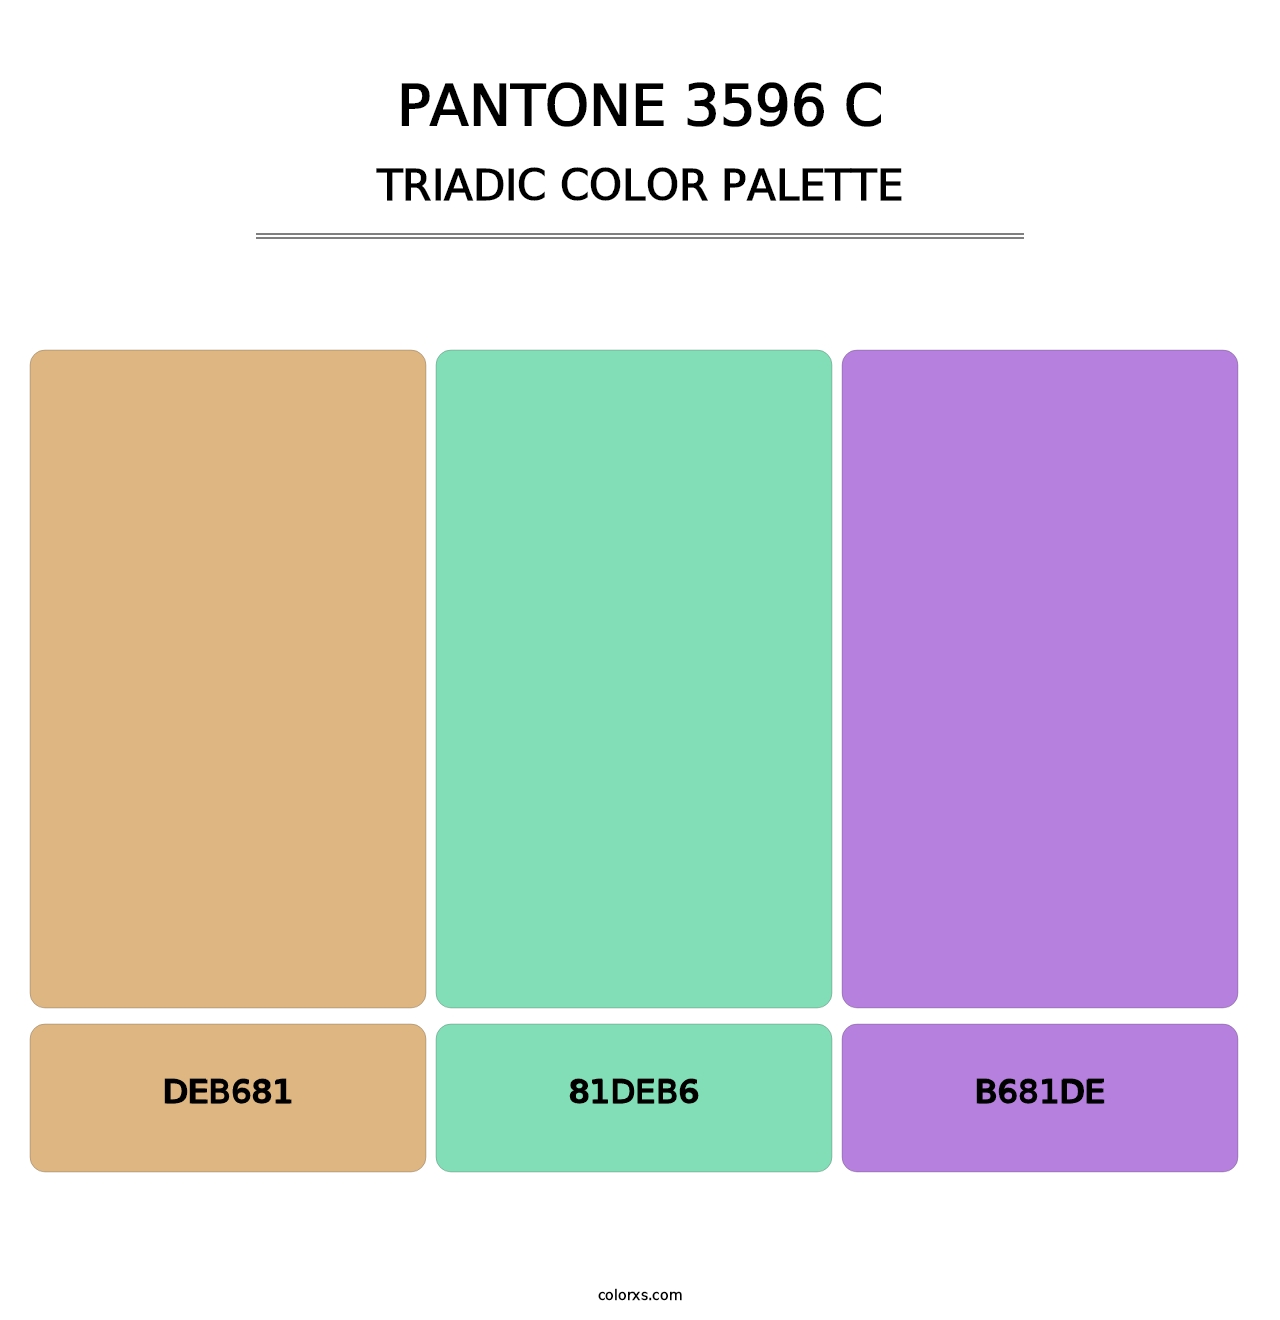 PANTONE 3596 C - Triadic Color Palette